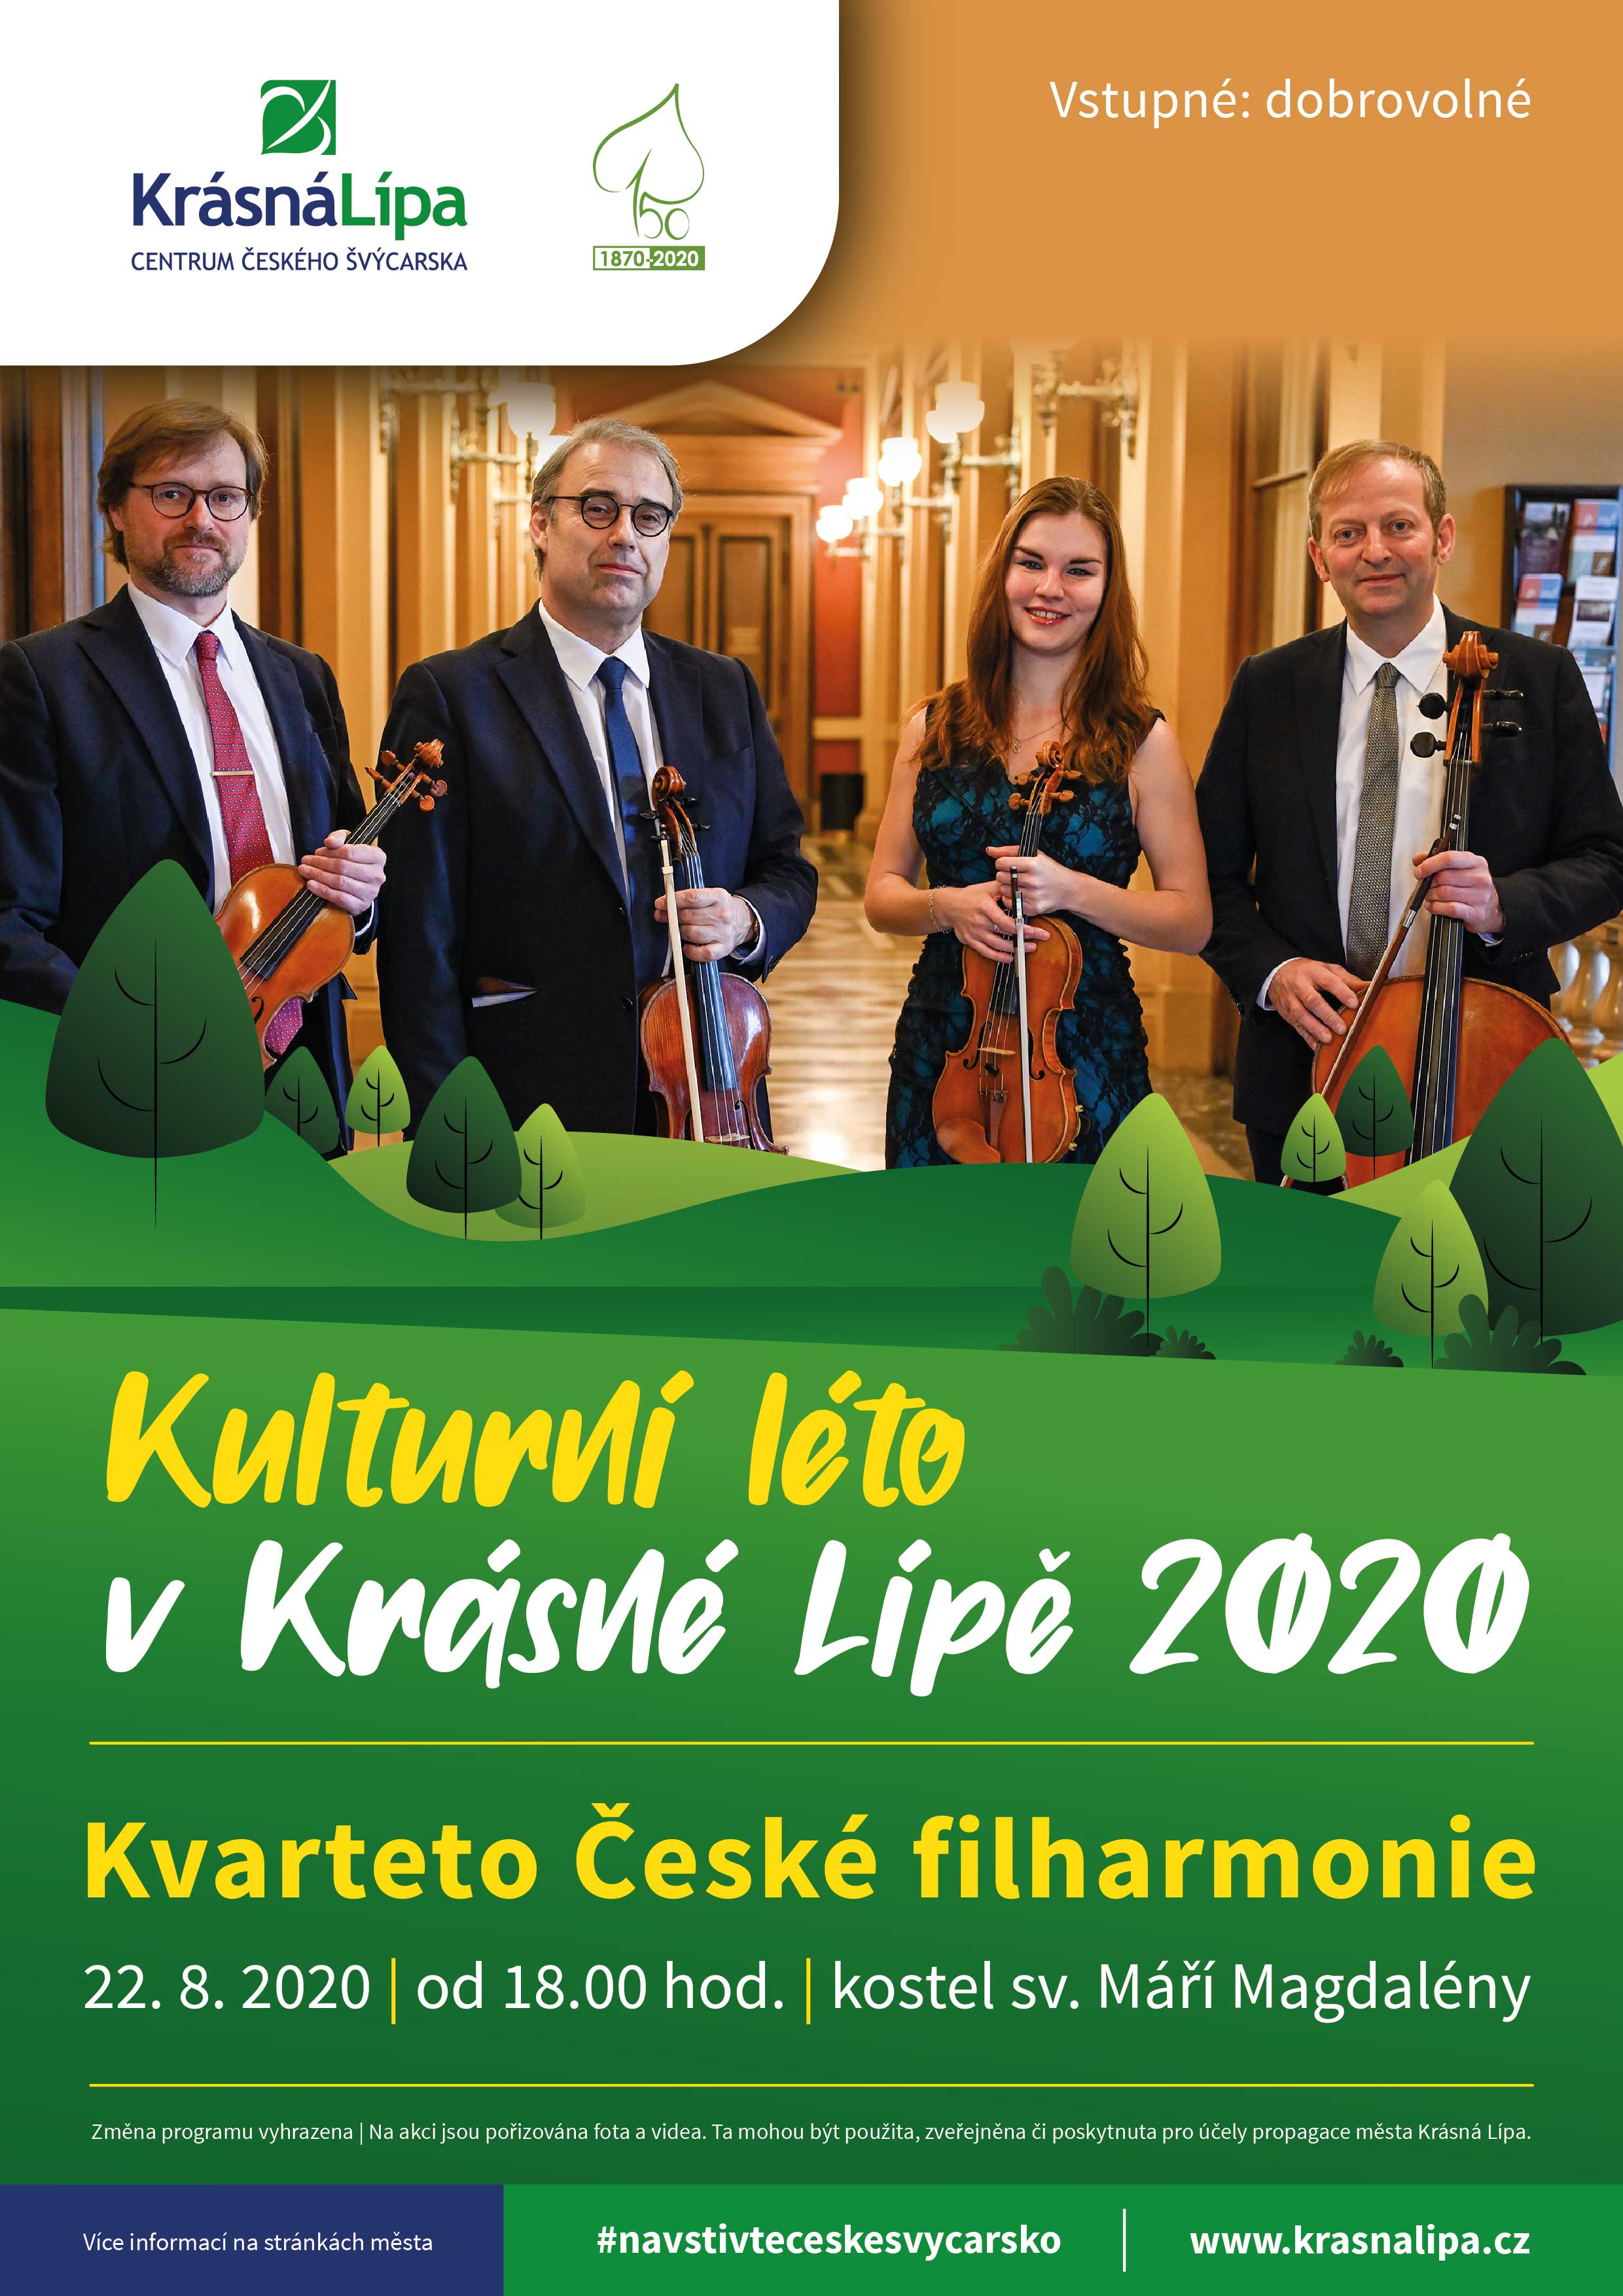 Kvarteto České filharmonie